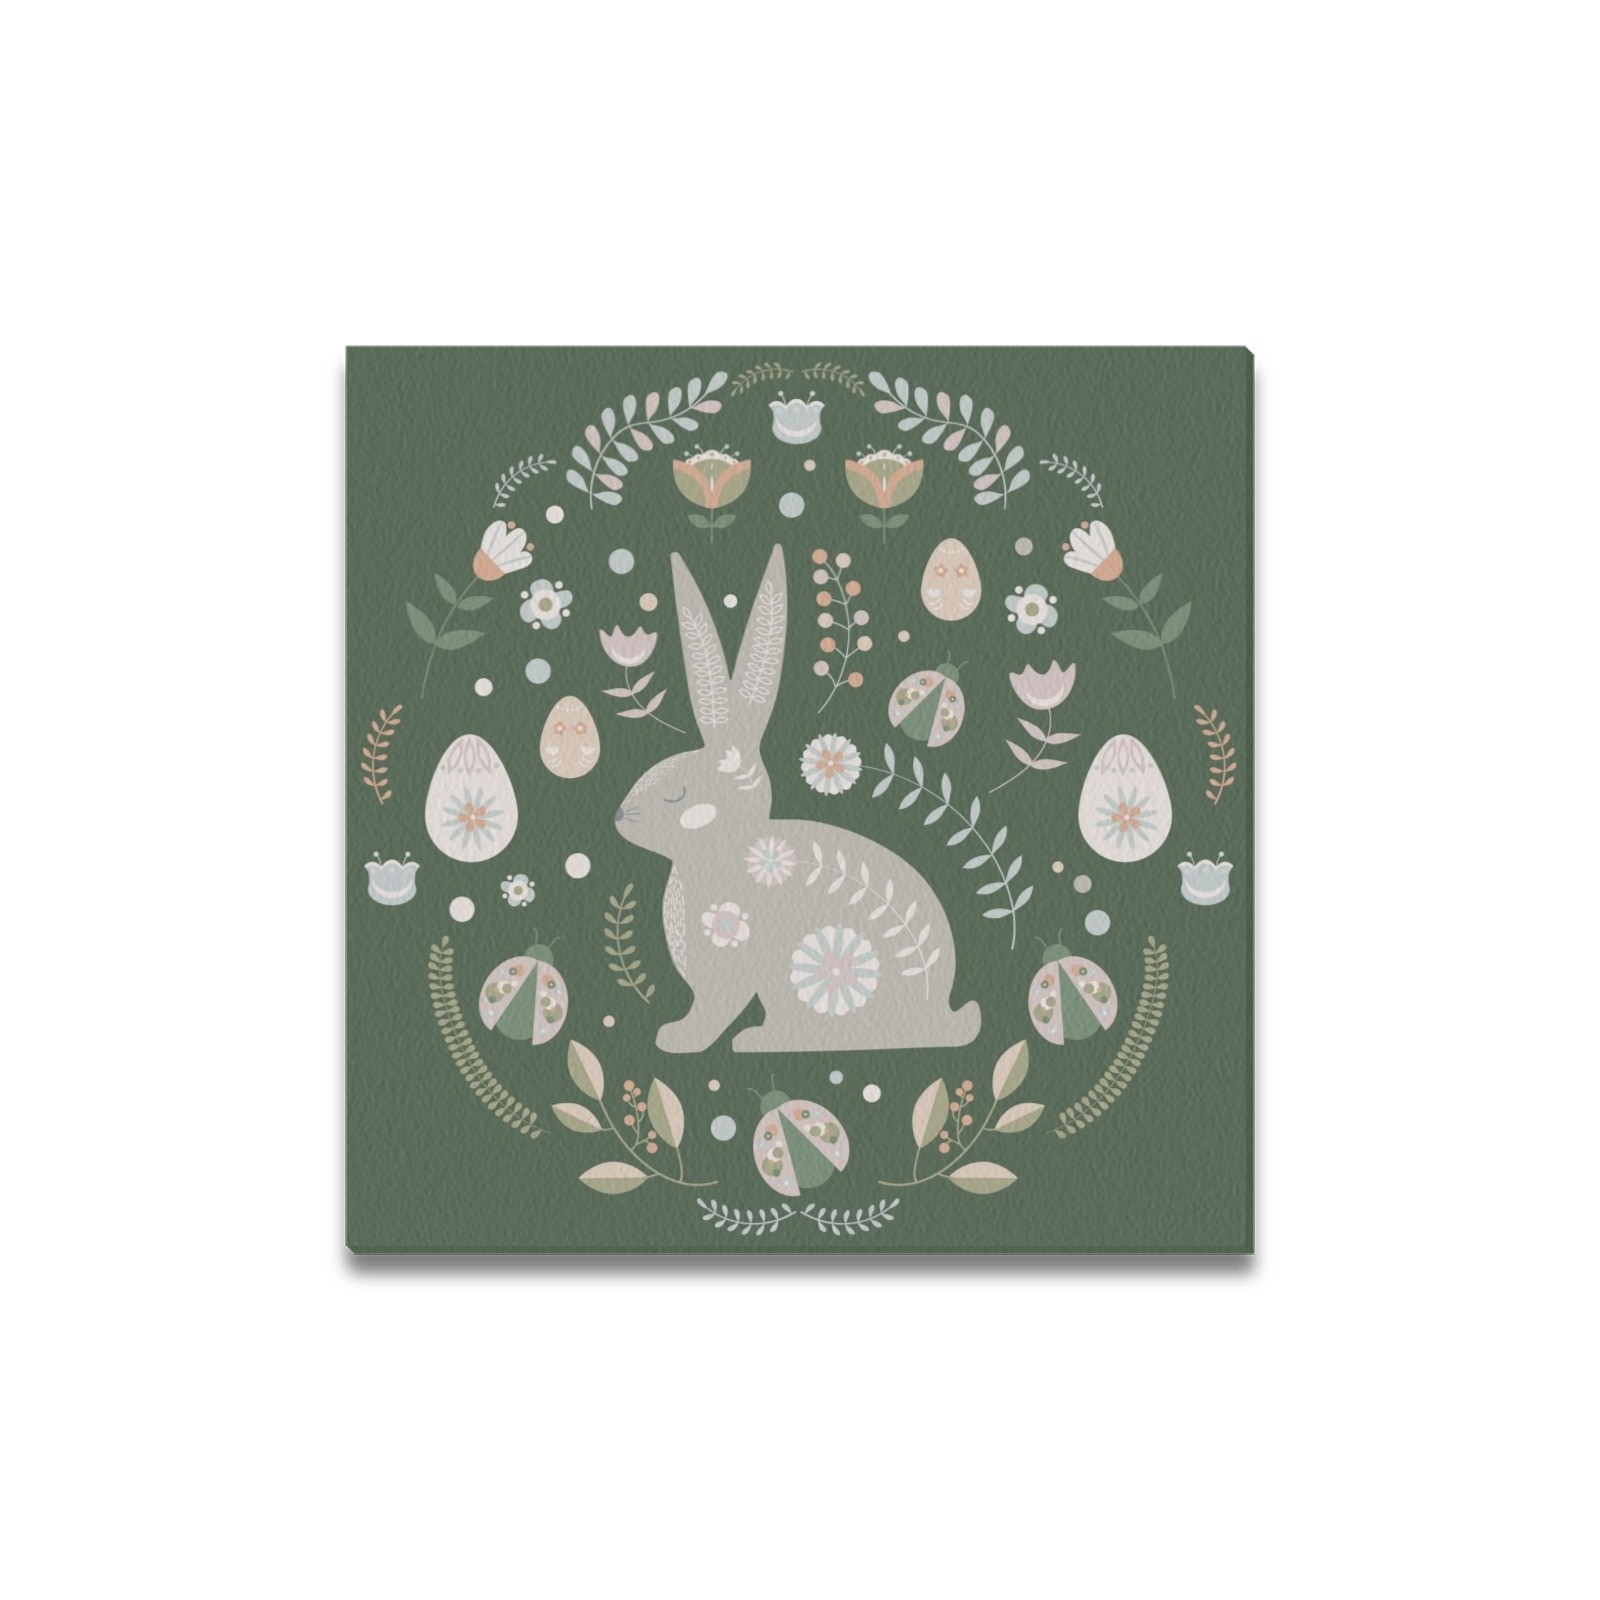 Folk Art Easter Bunny Rabbit Frame Canvas Print 16"x16"